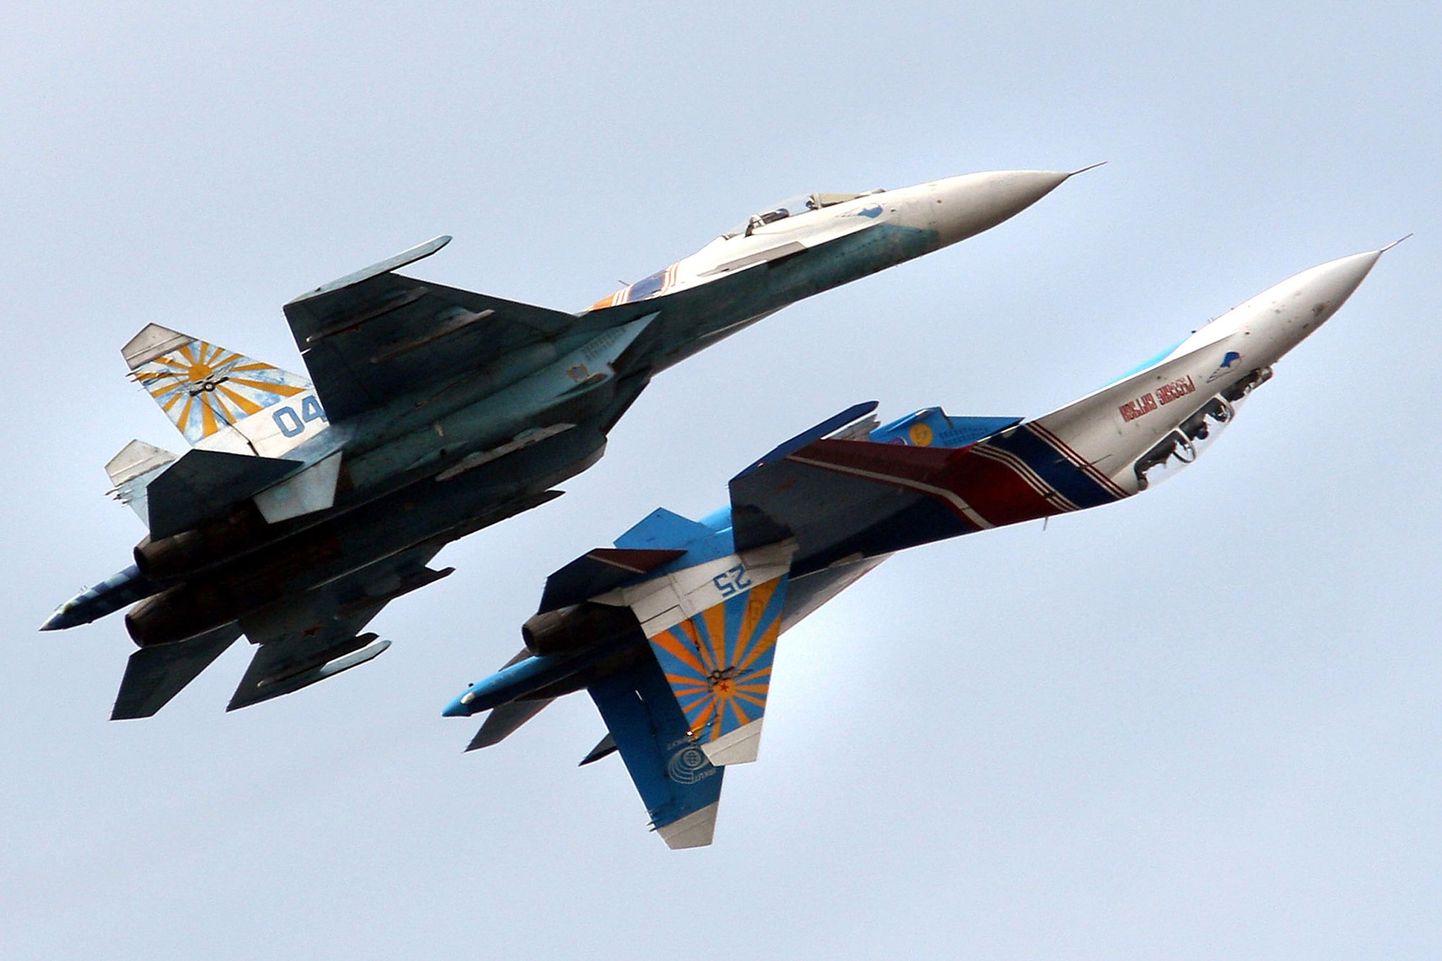 Vene õhujõudude demonstratsioonil esinevad hävituslennukid Su-27.